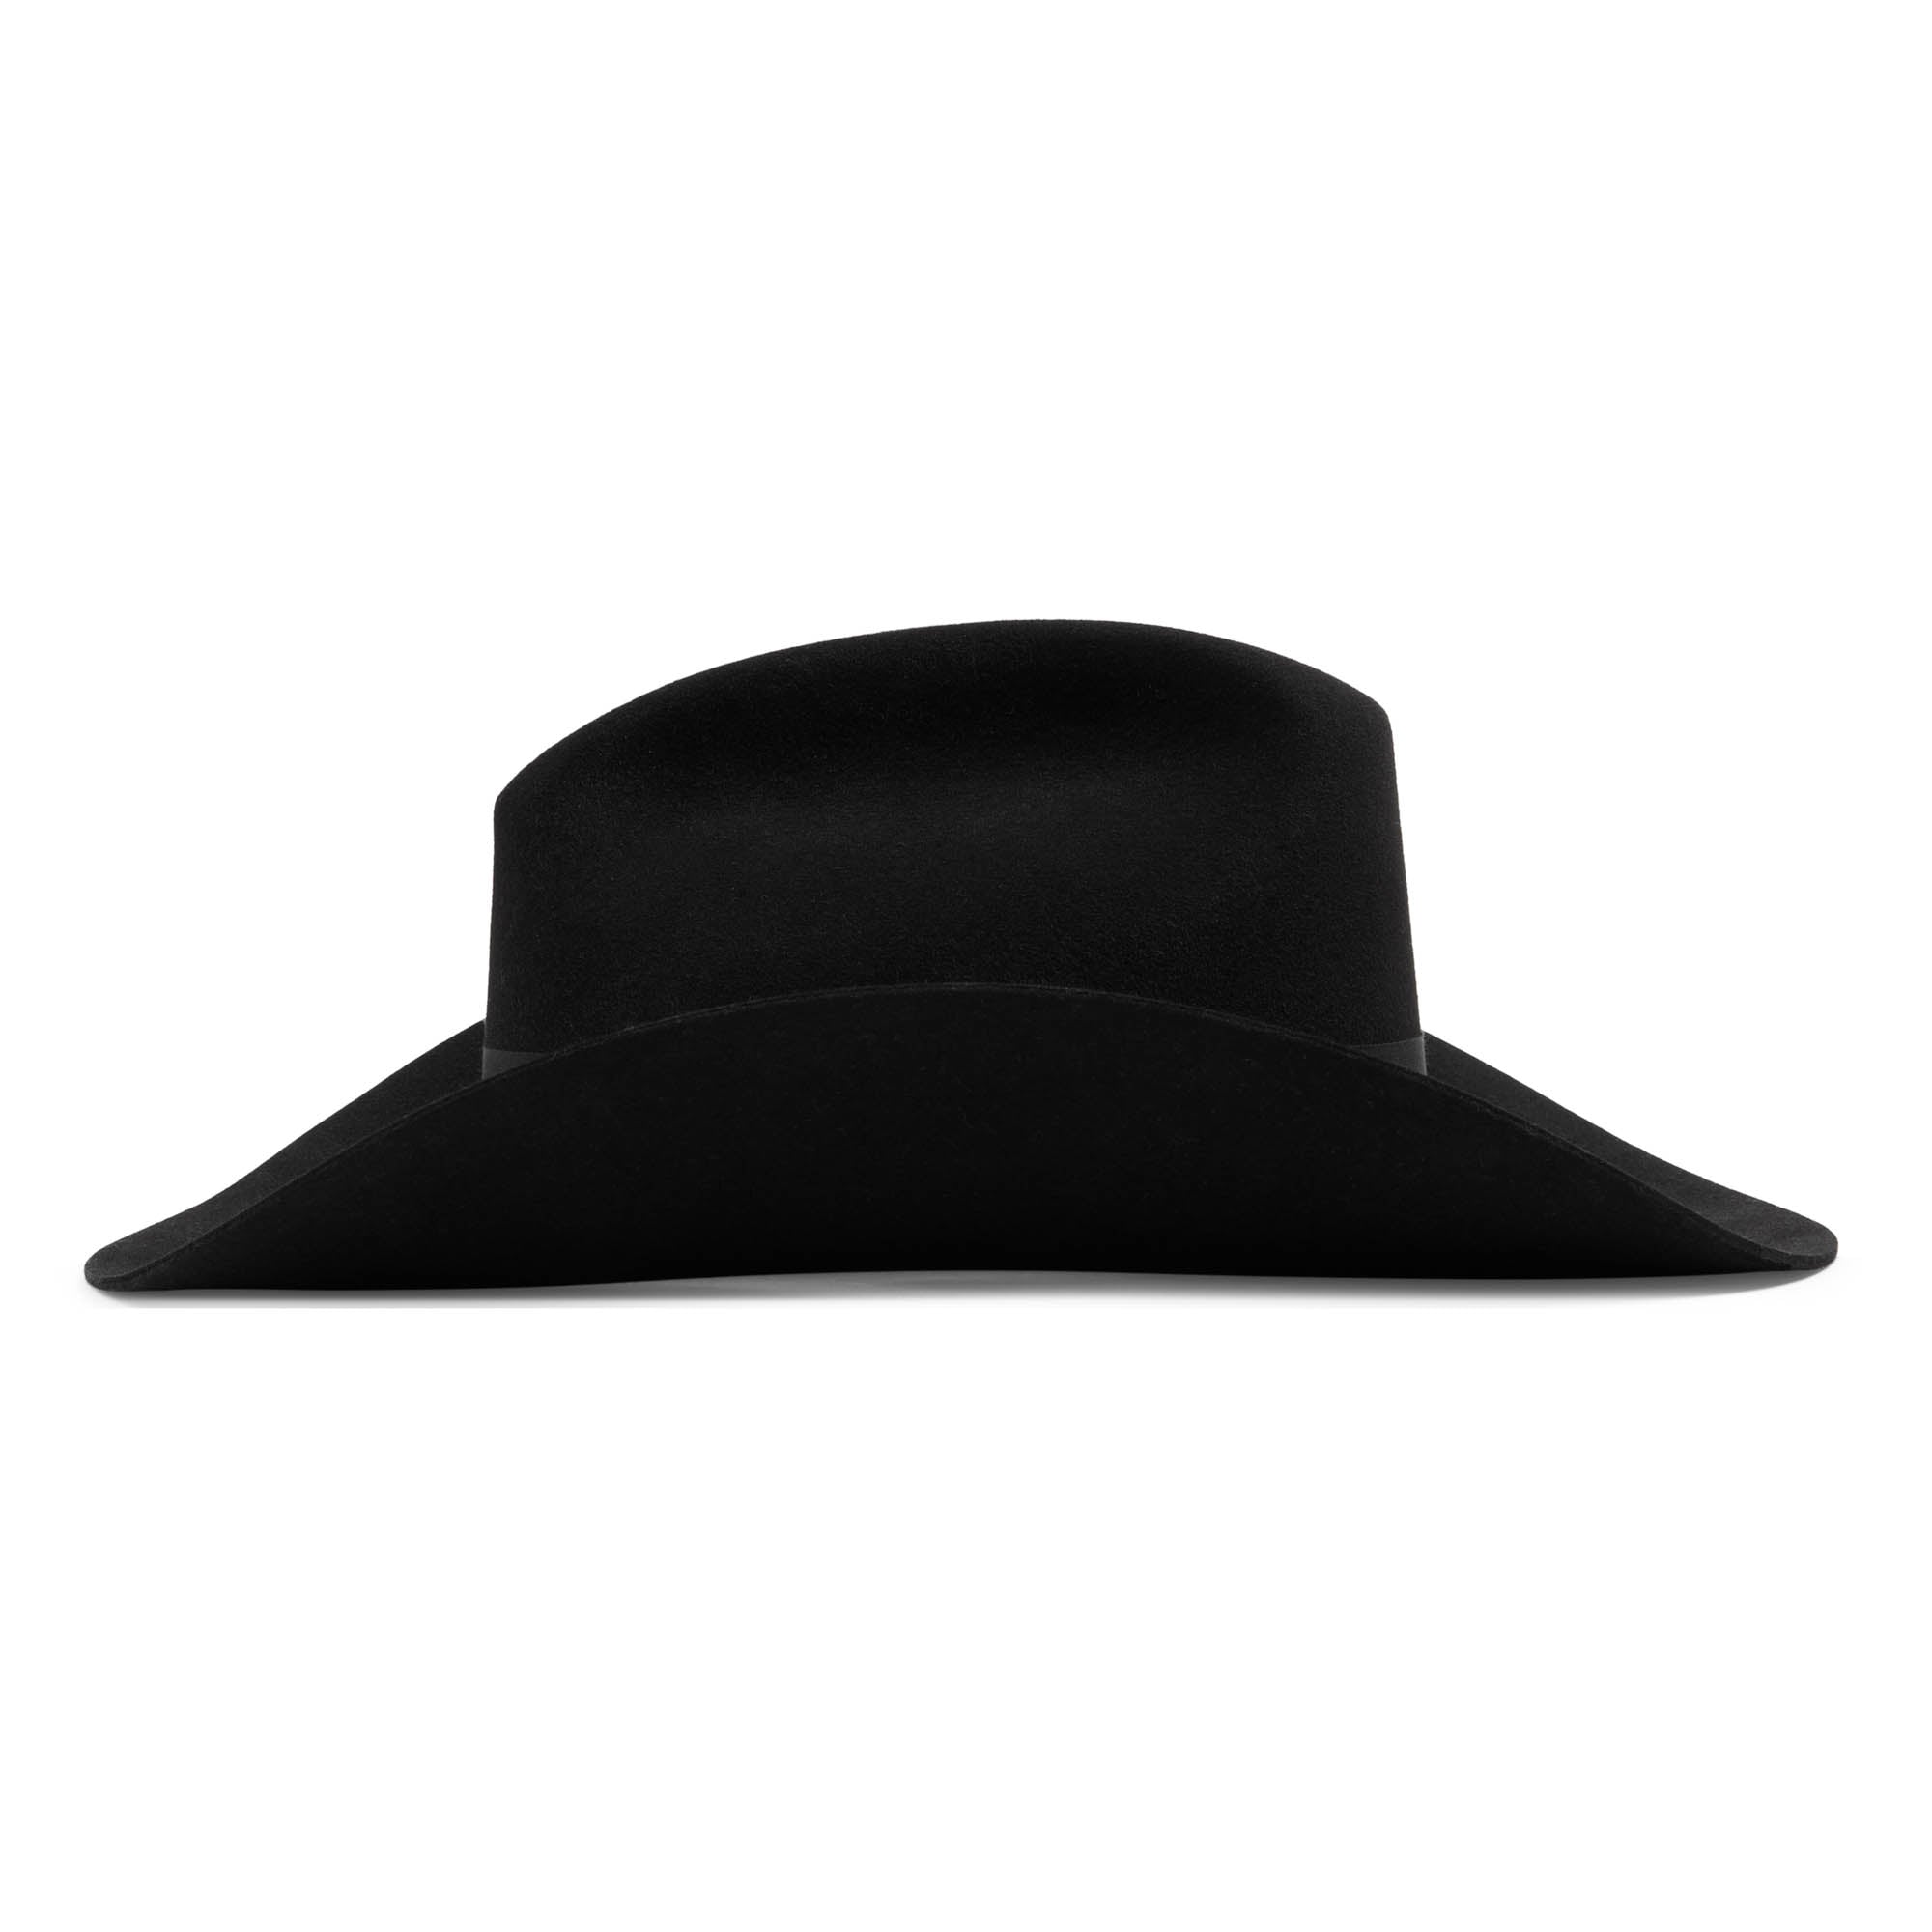 Gucci Felt Fedora Hat in Black for Men